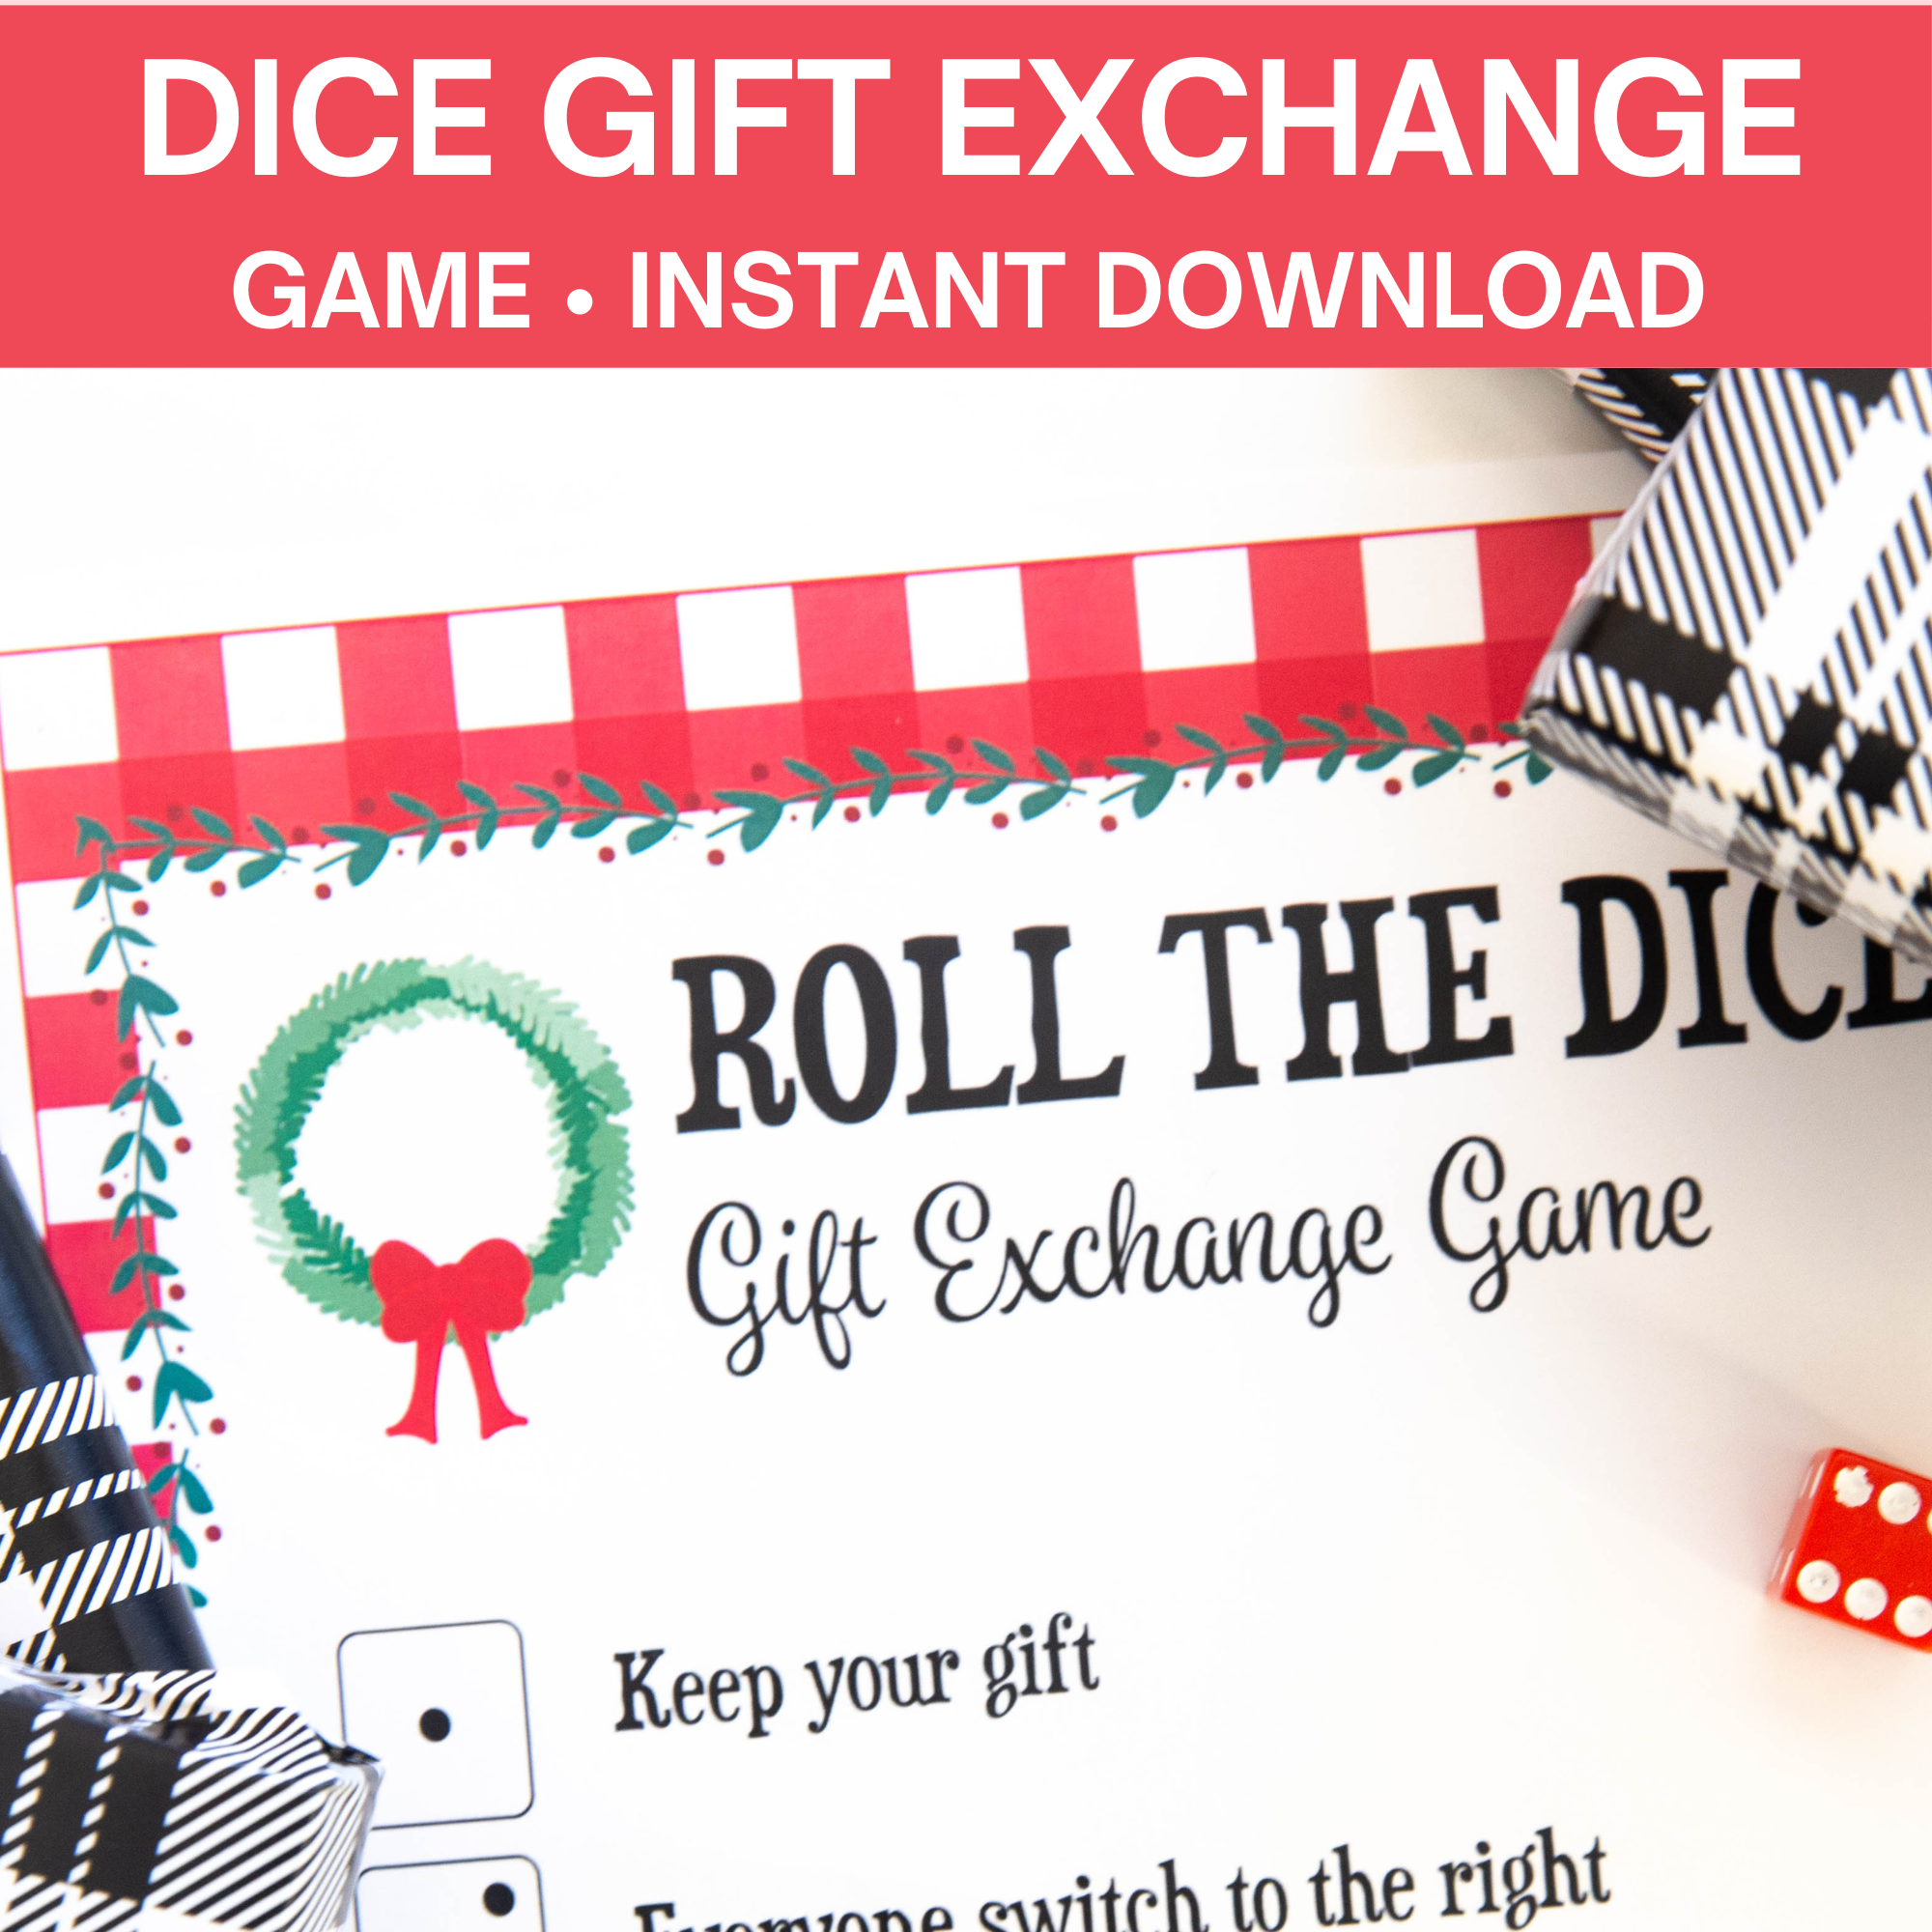 The Christmas Dice Game - A Fun Gift Exchange Printable Game!